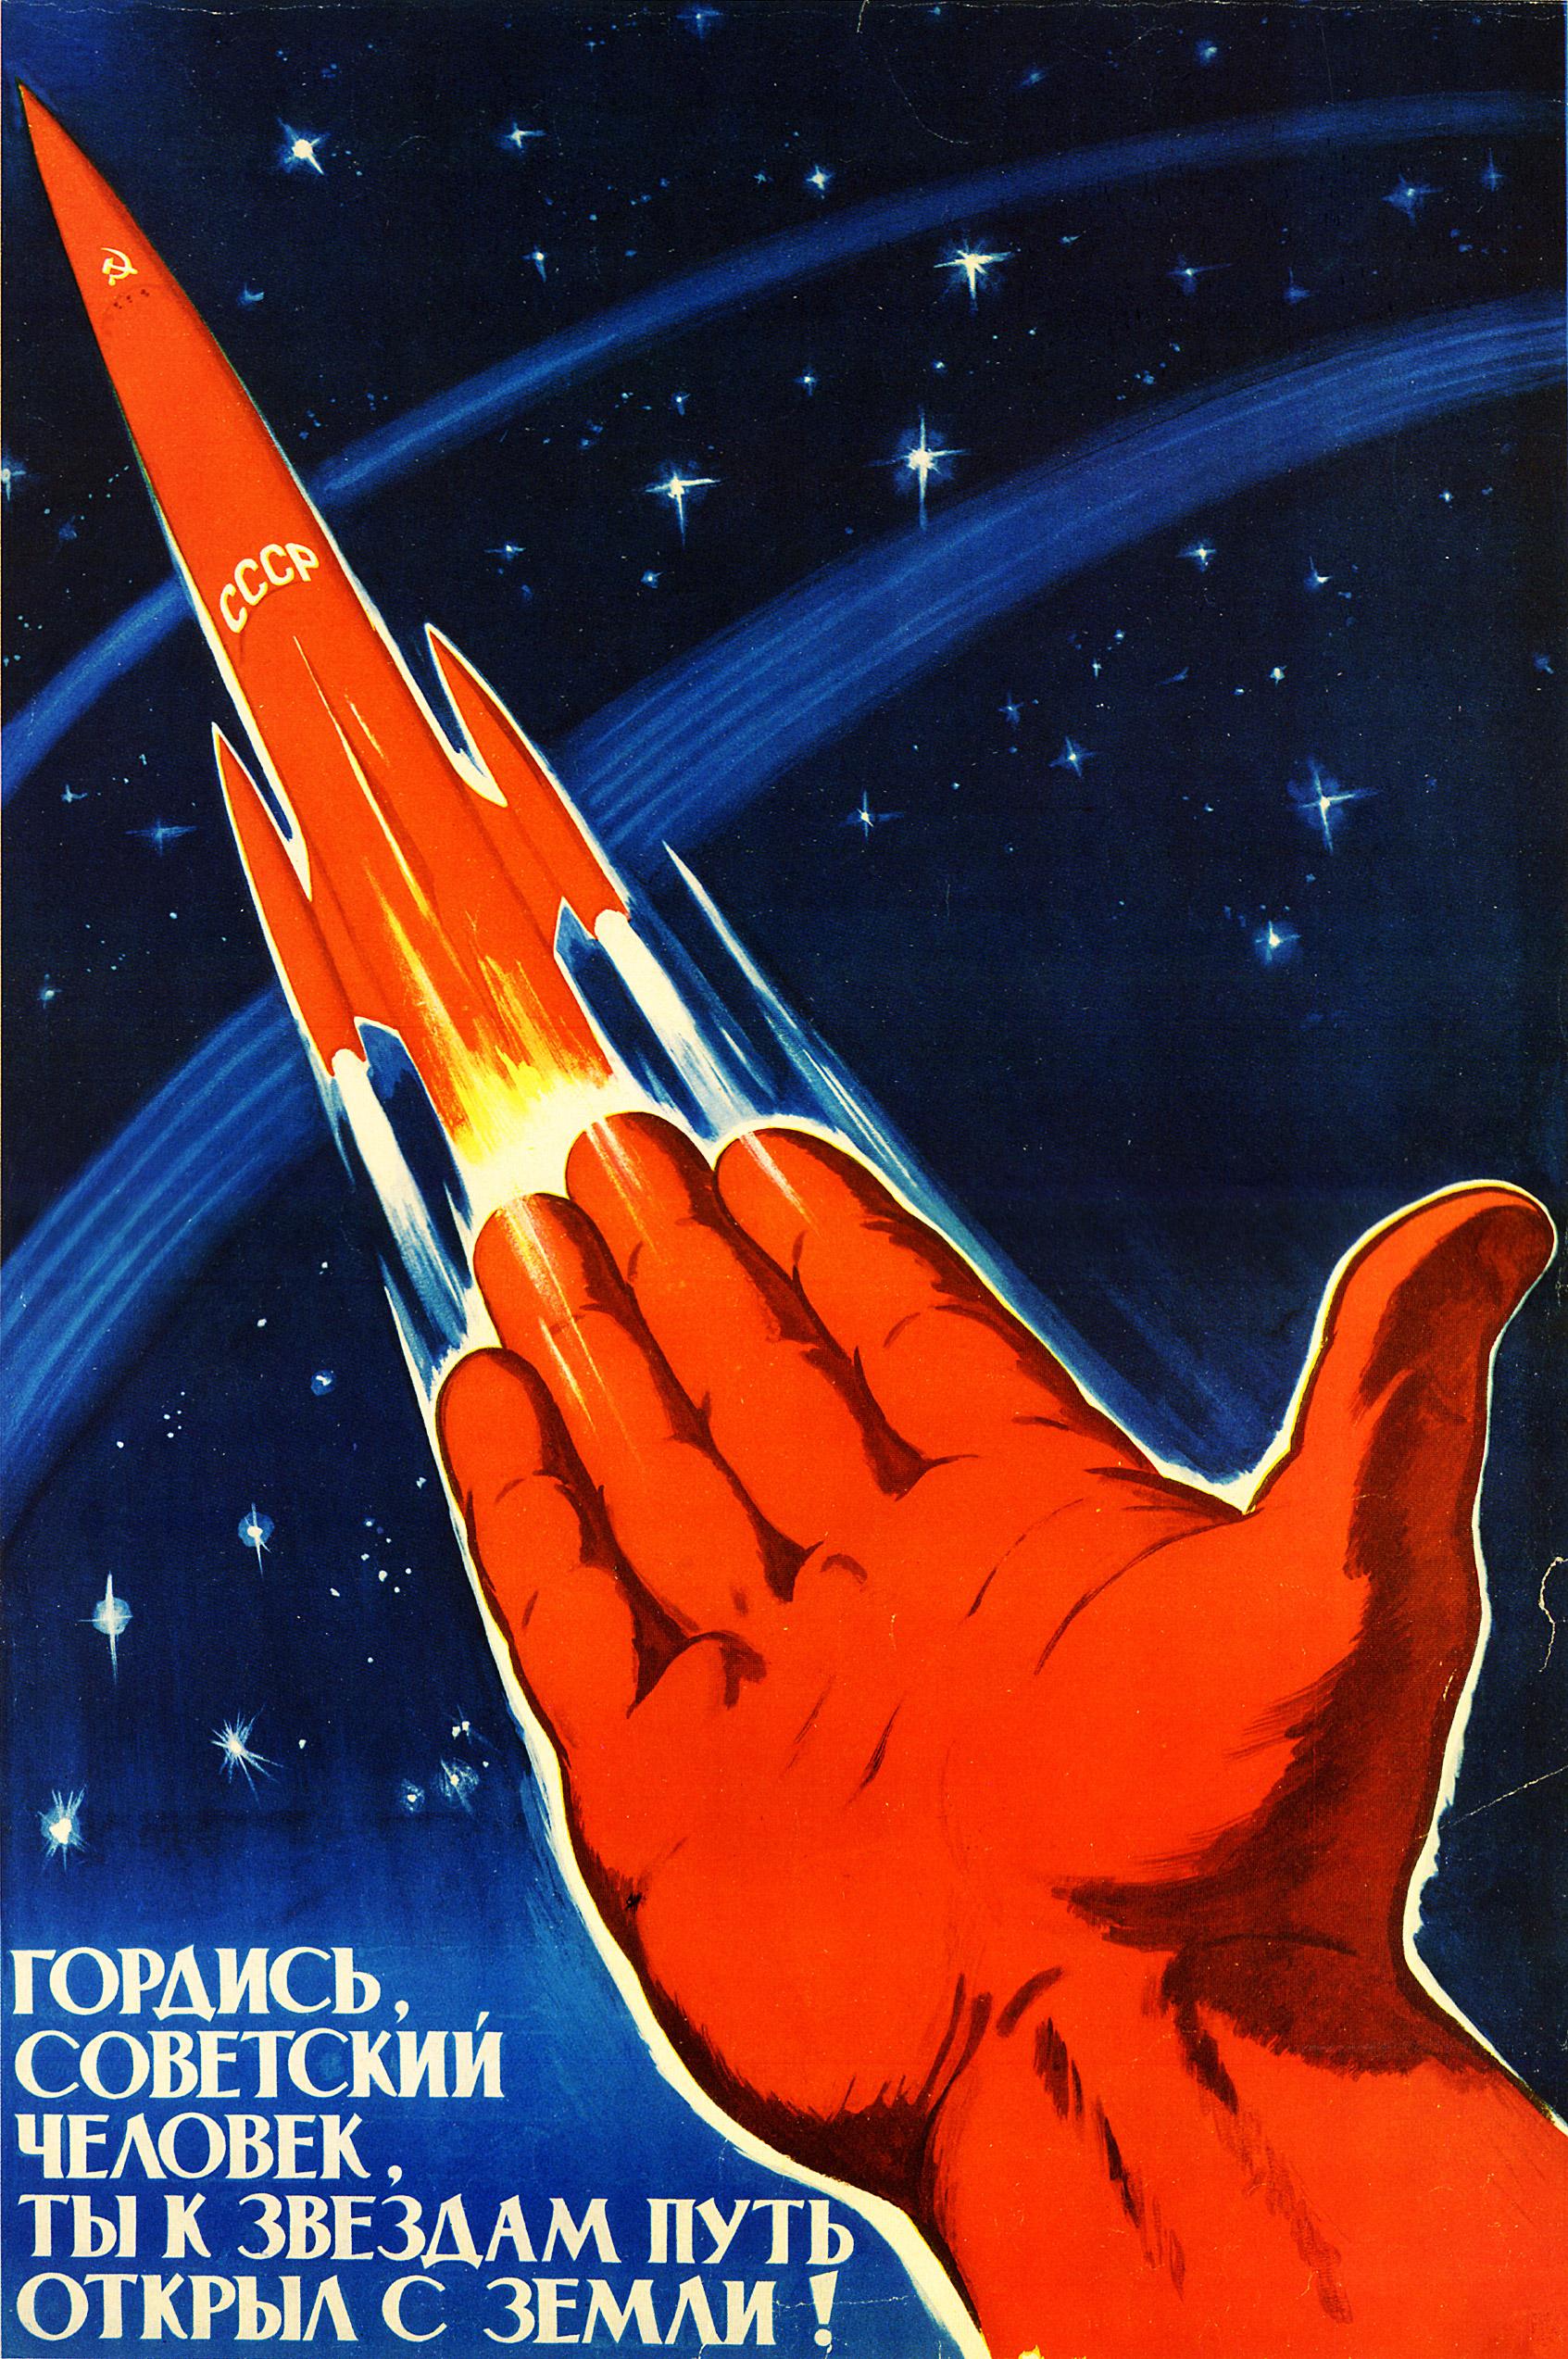 61 Sensationnel Espace Soviétique Affiches